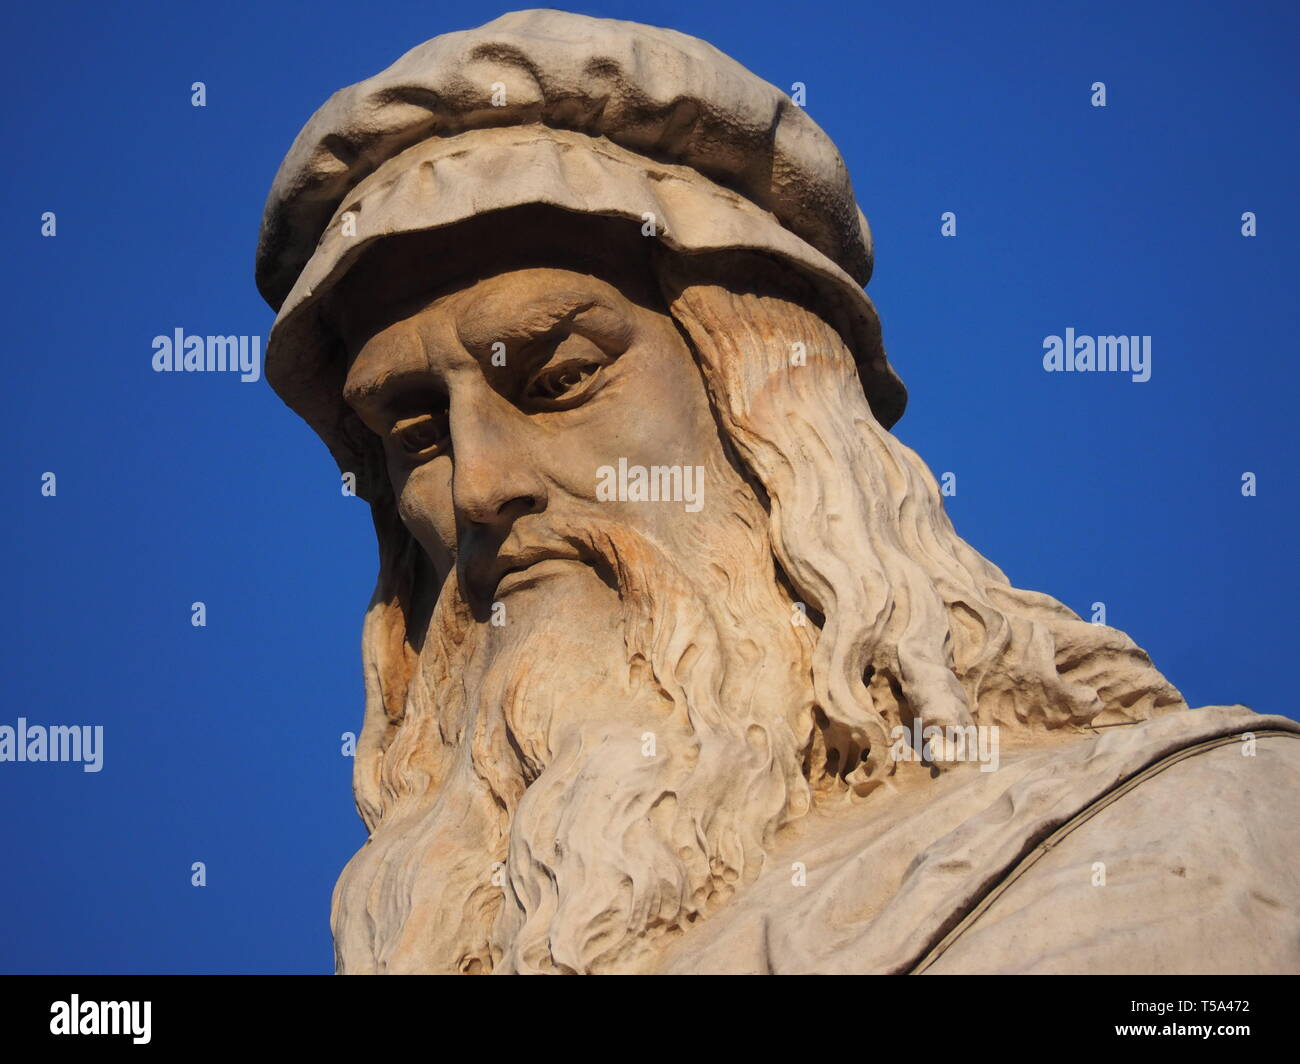 Leonardo Da Vinci sculpture in Piazza della Scala square, Milan. Stock Photo